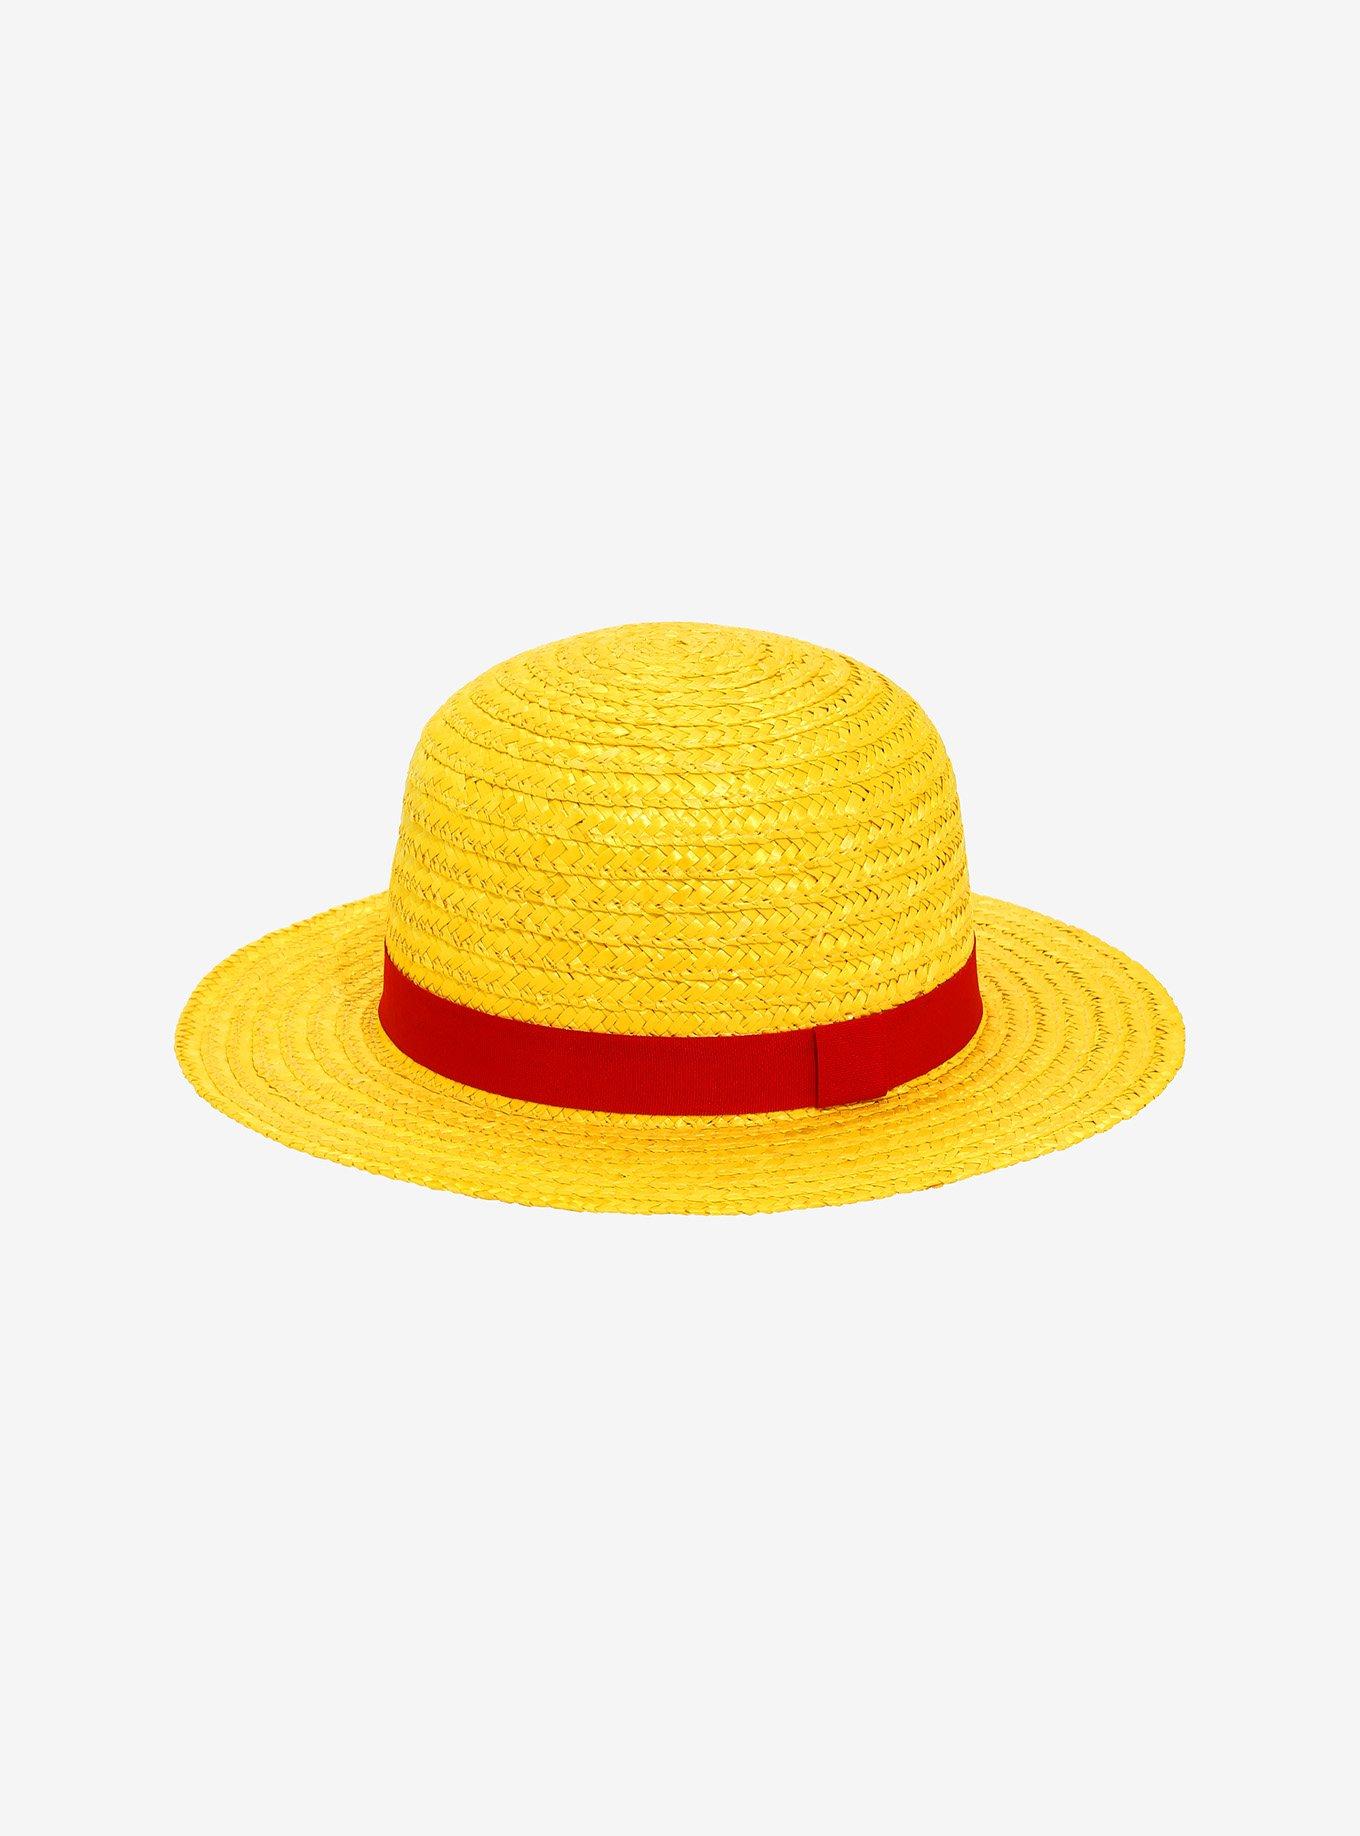 One Piece Luffy Cosplay Straw Hat, , alternate